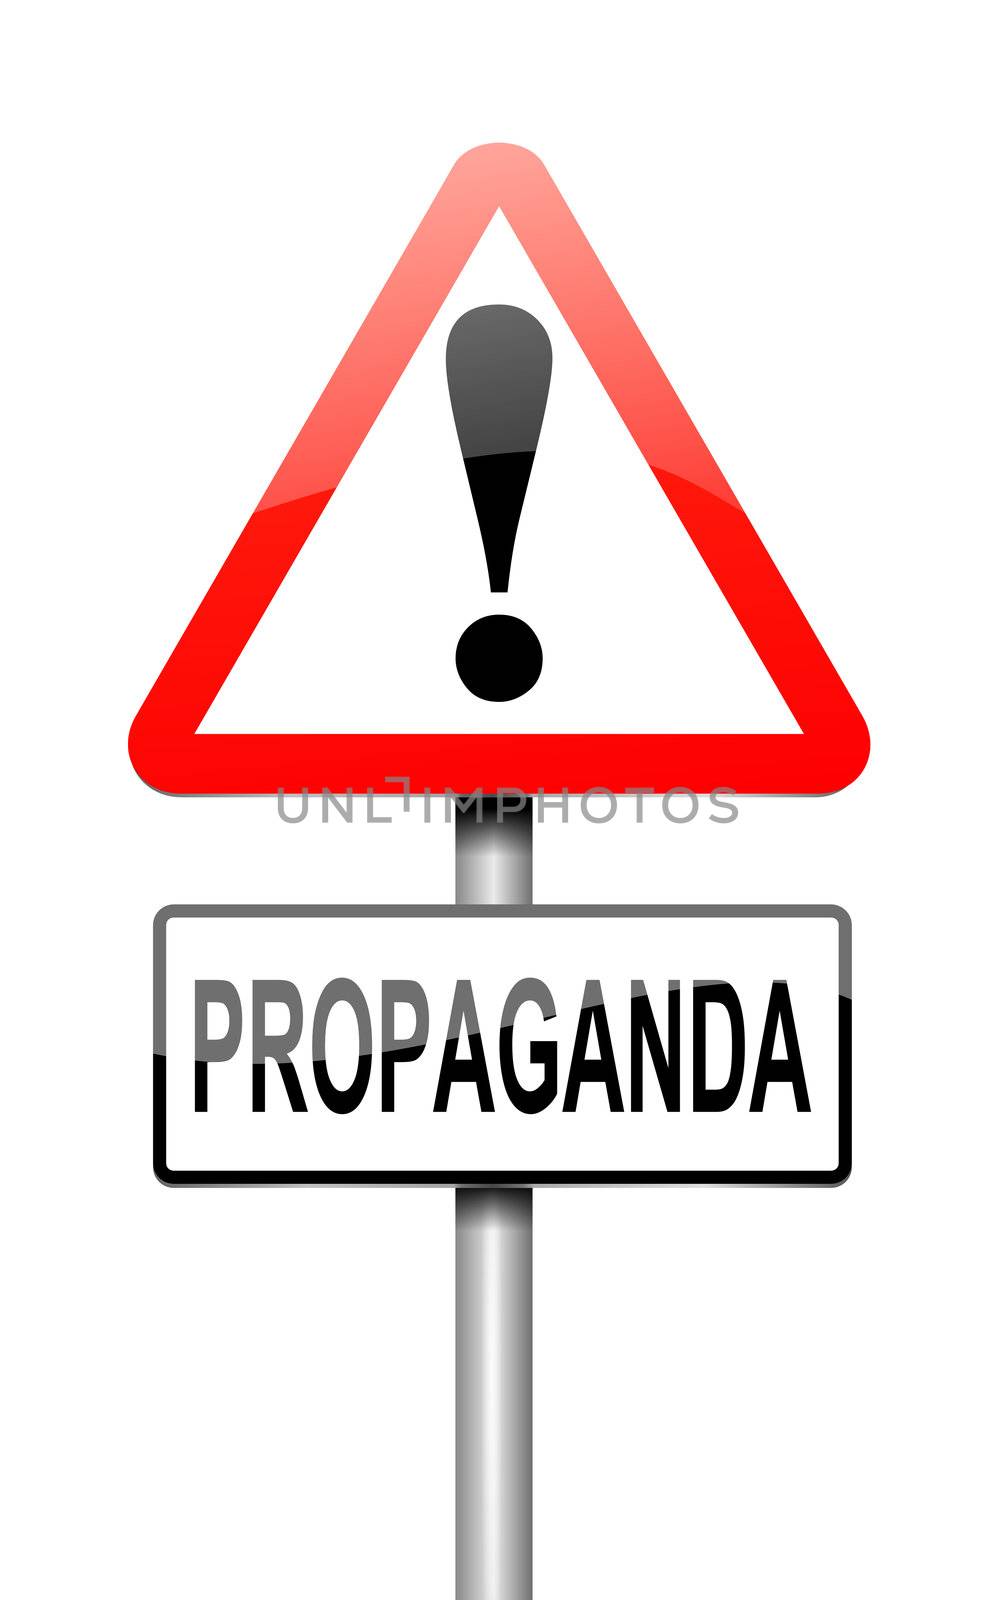 Propaganda concept. by 72soul